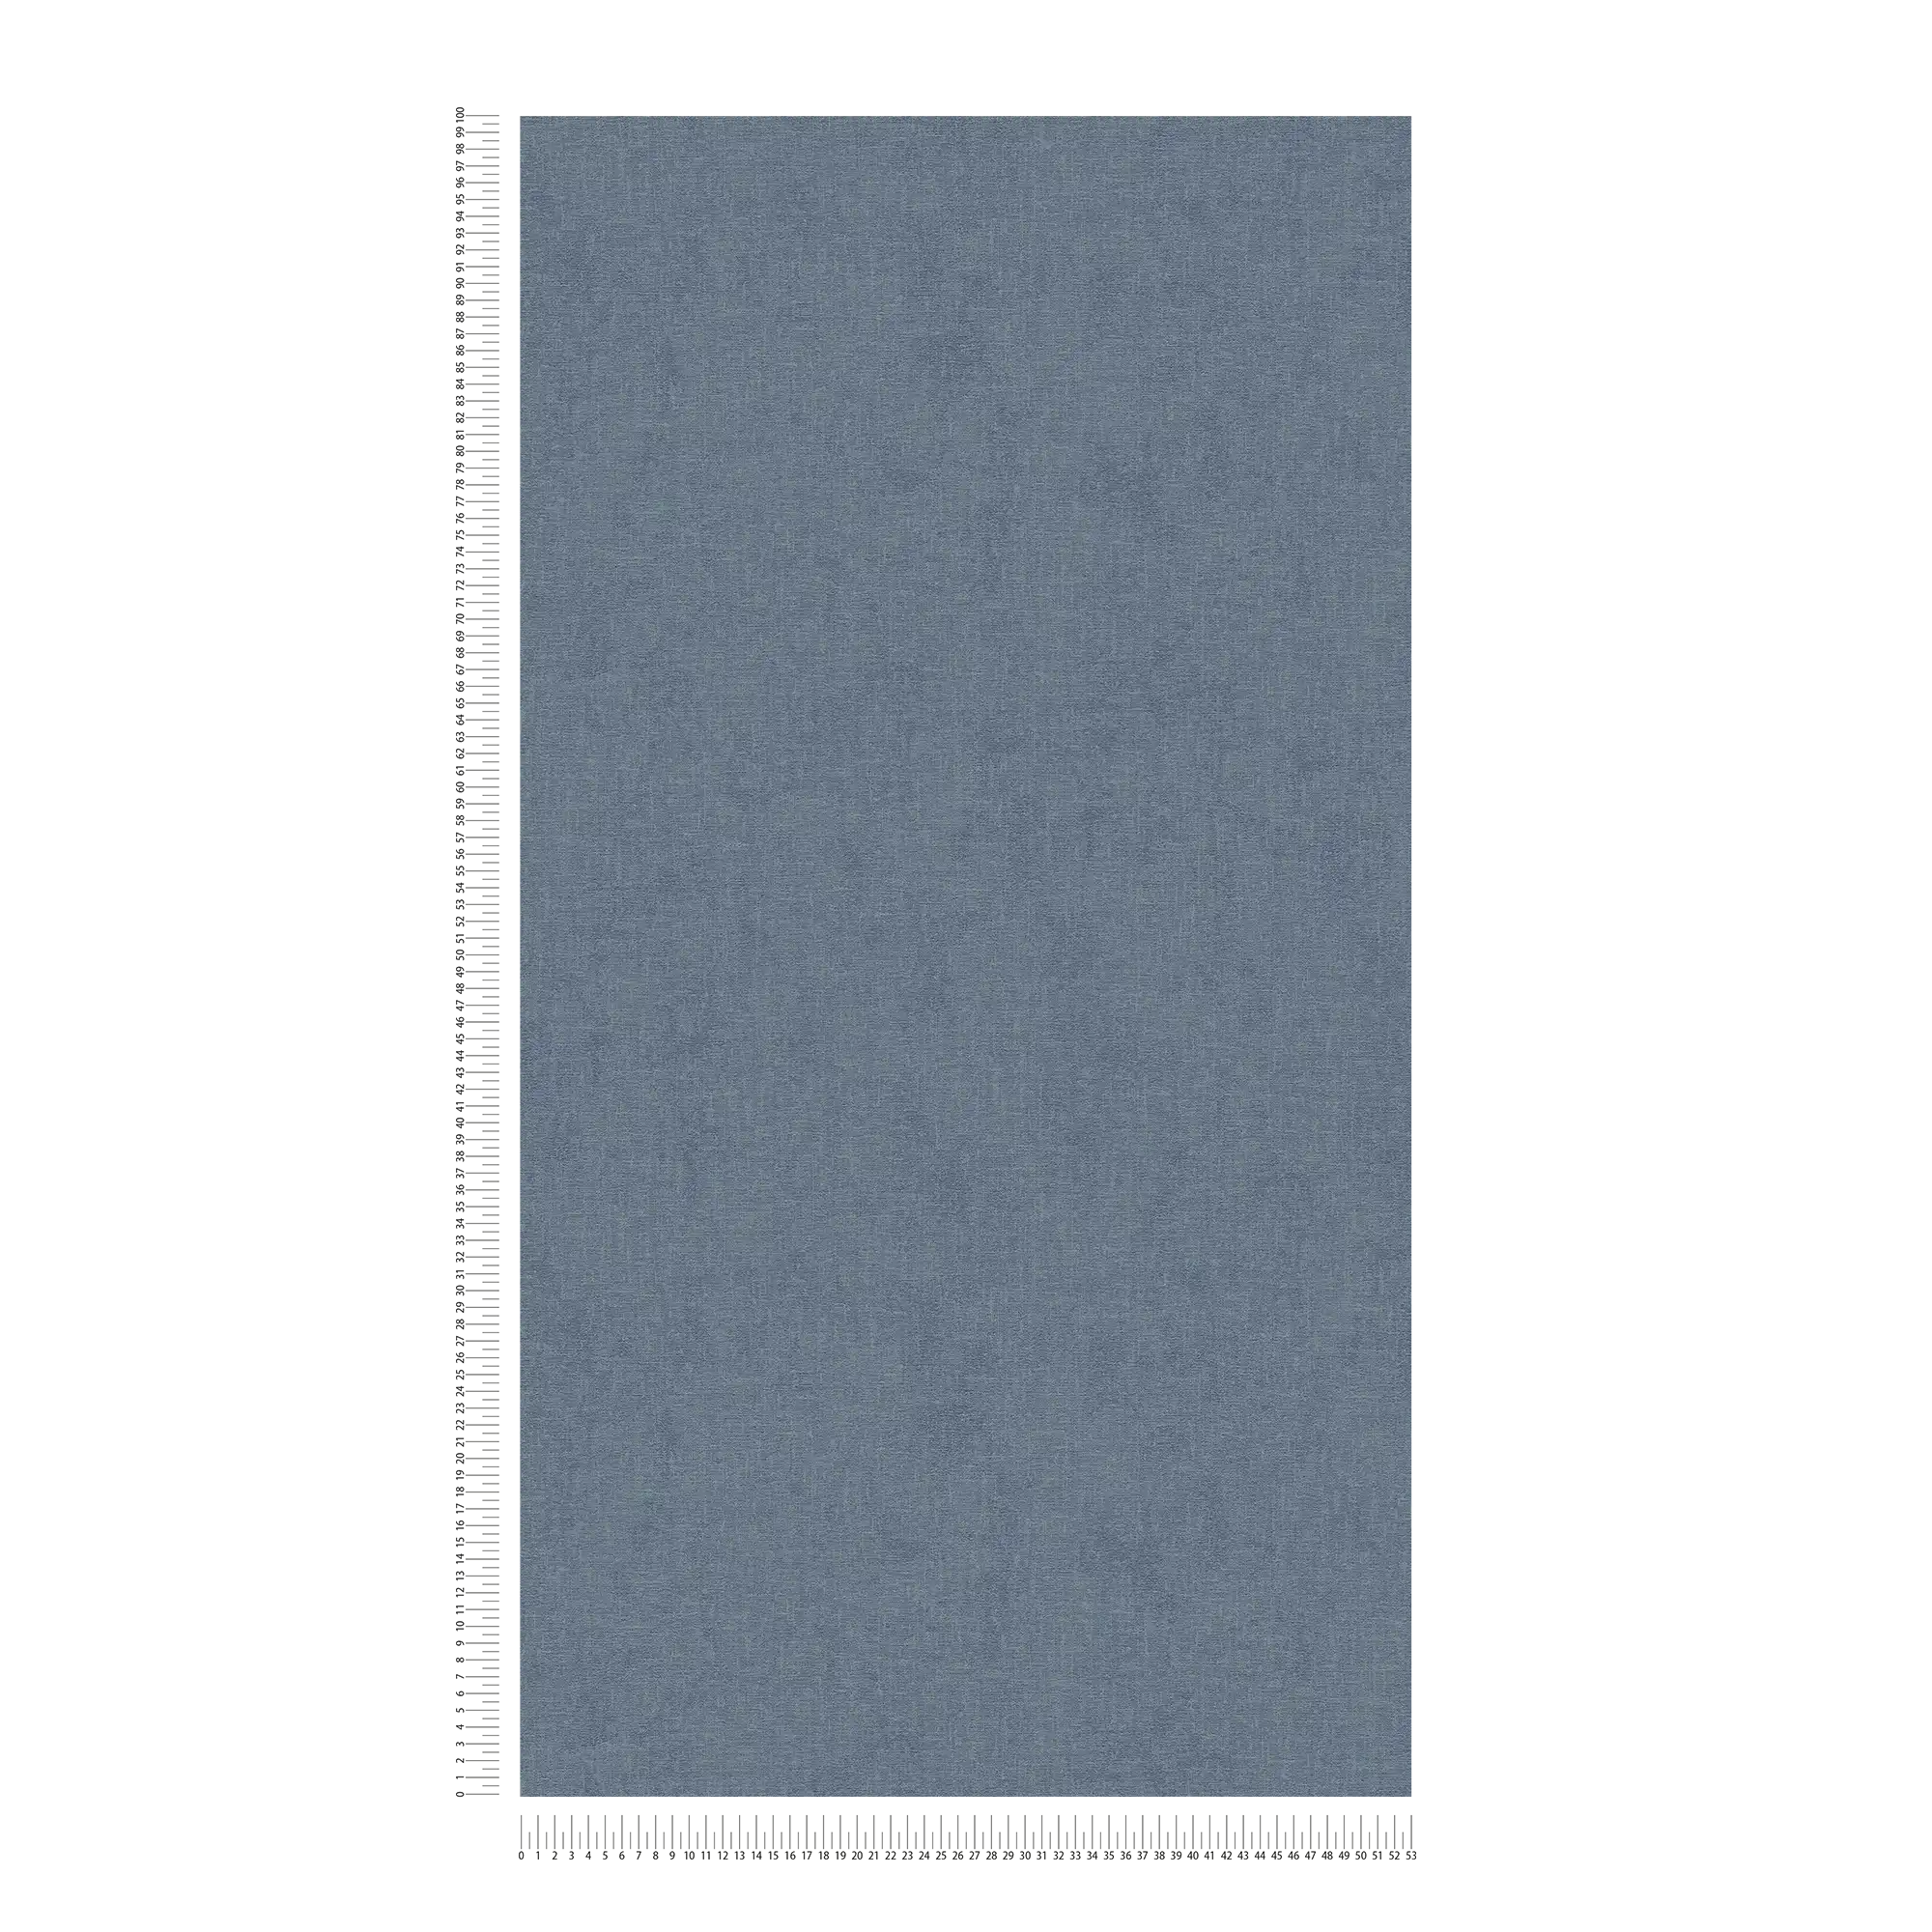             Eenheidsbehang gevlekt met textiel look - blauw
        